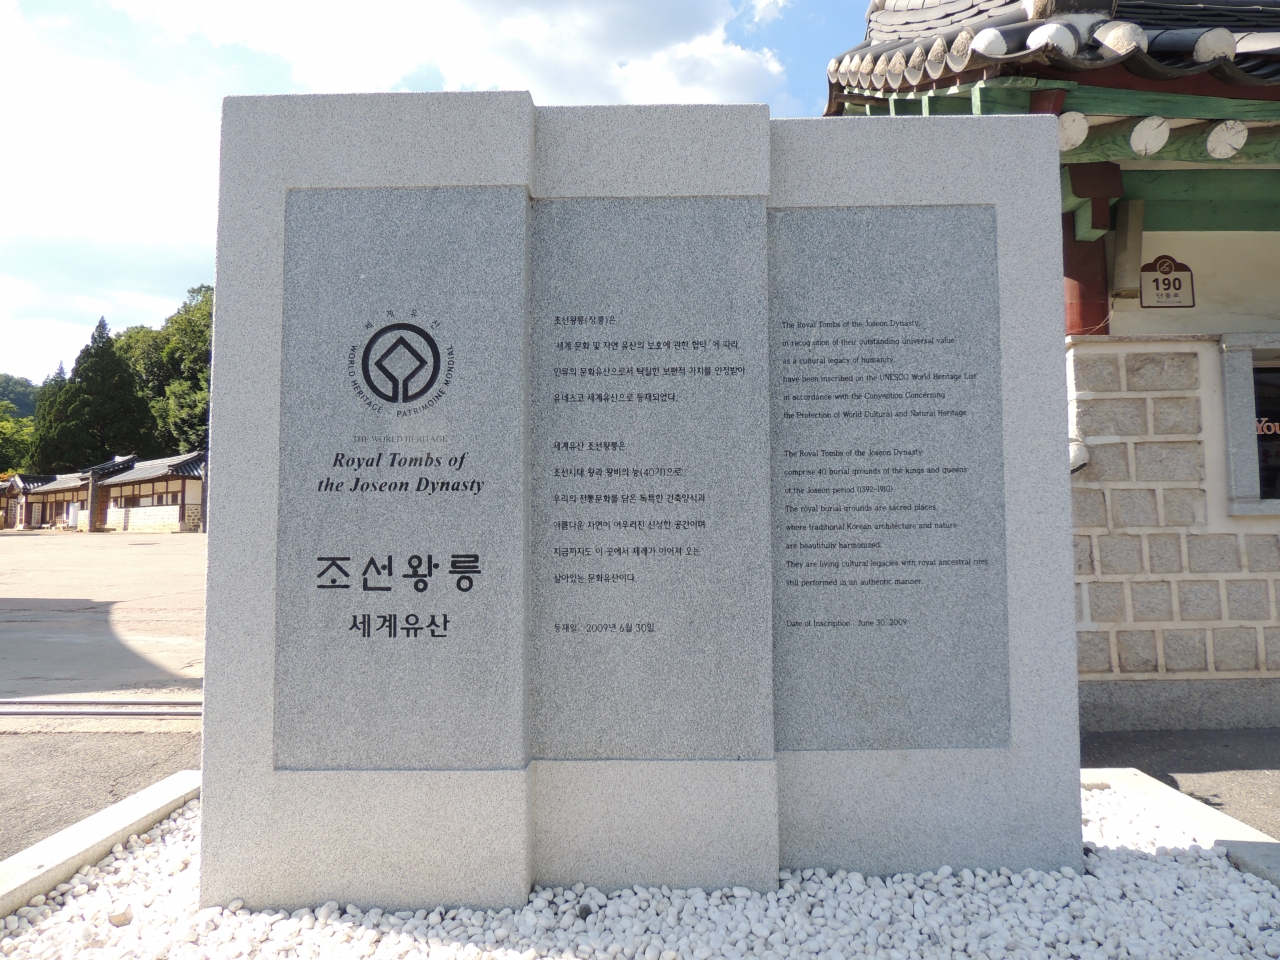 영월 장릉은 세계문화유산에 등재된 조선왕릉 40기 중 하나